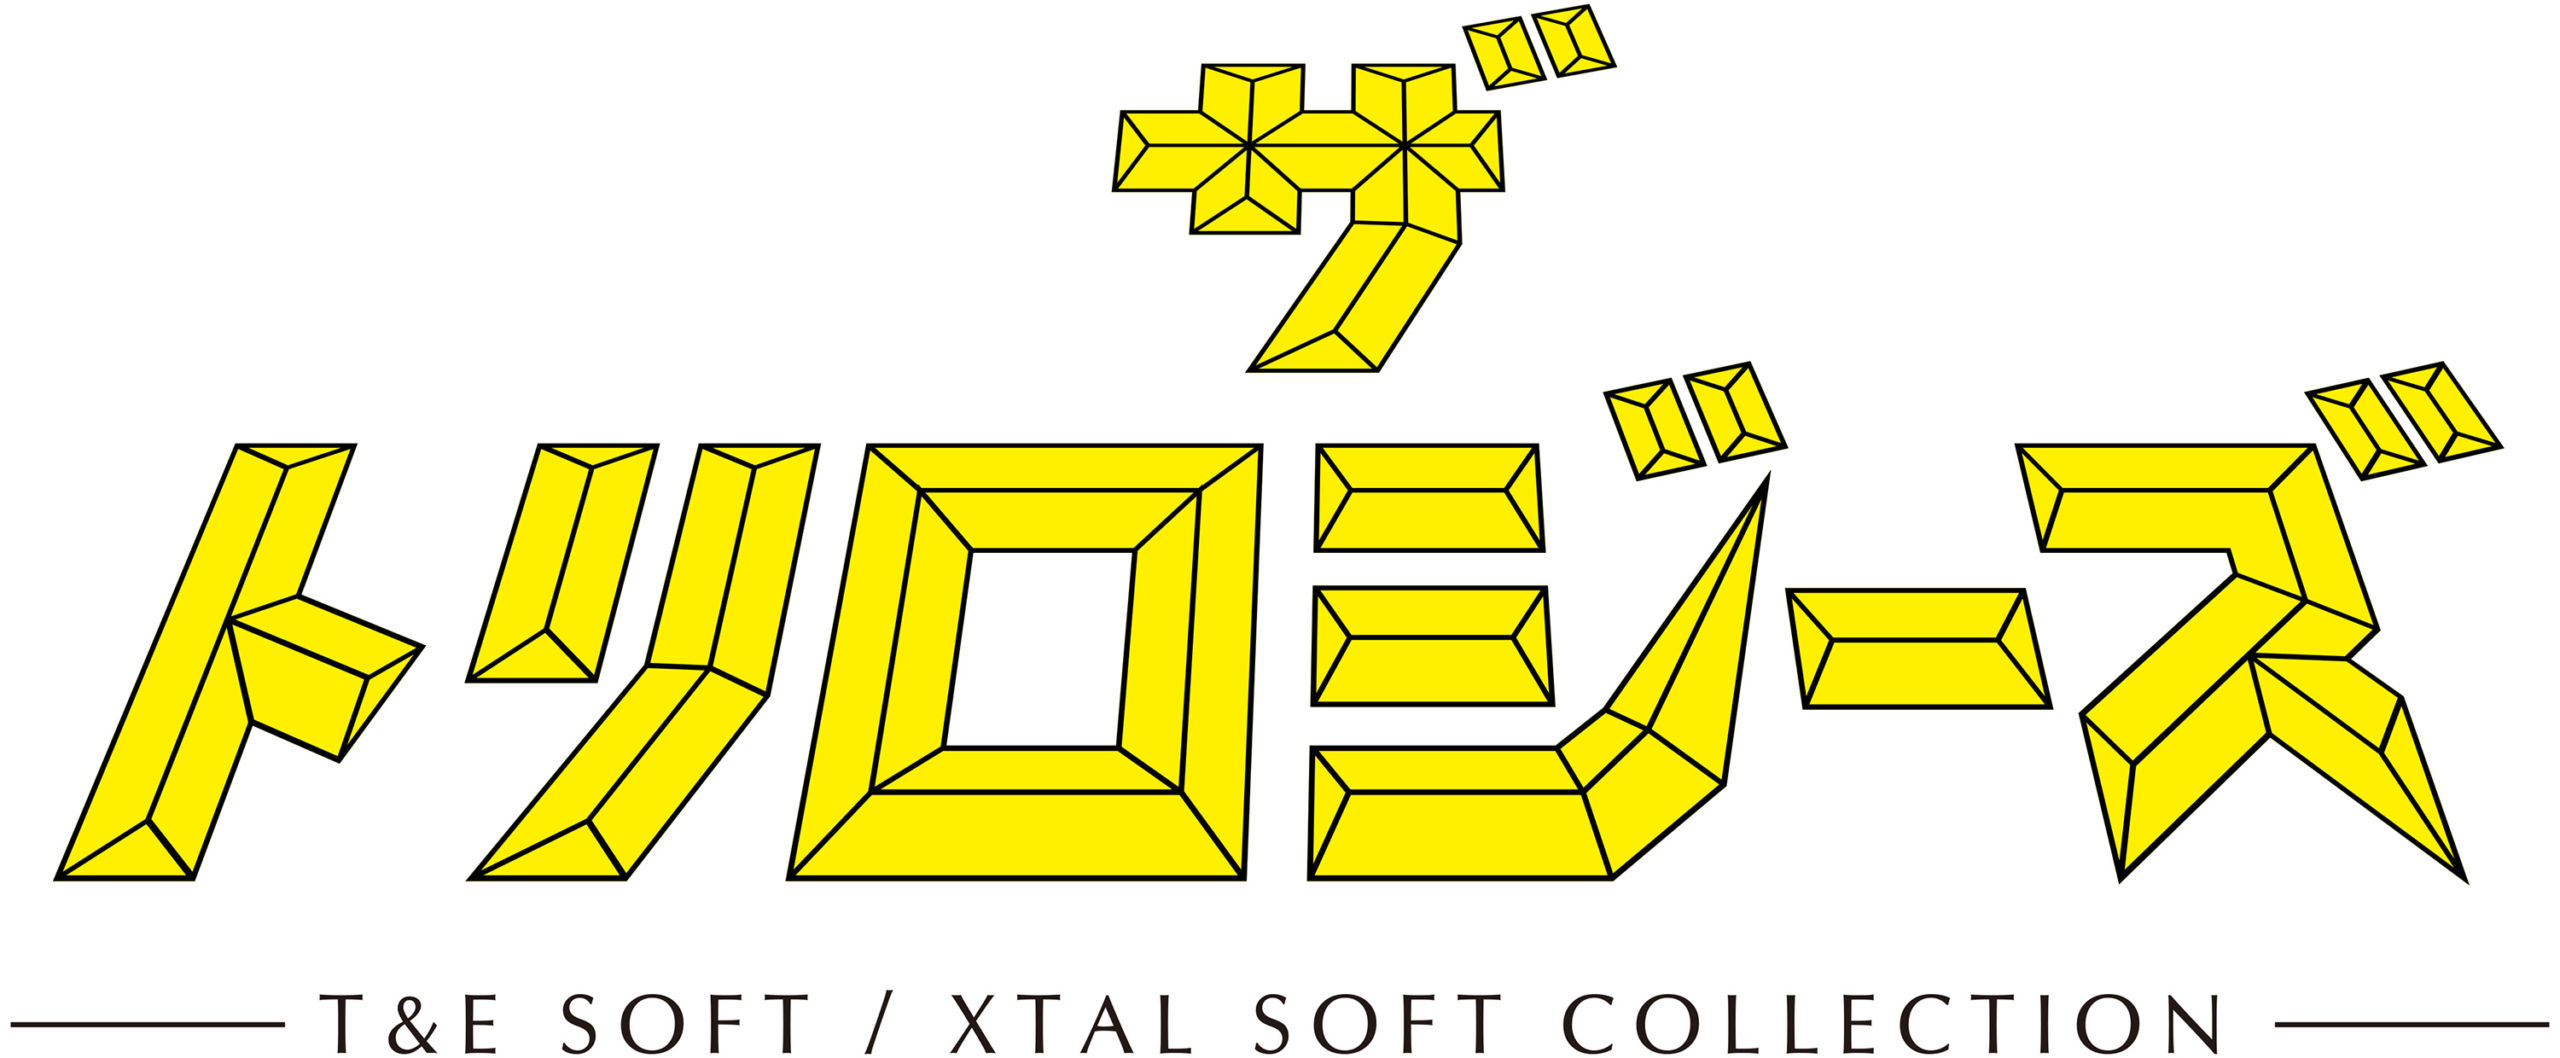 『プロジェクトEGG』サービス開始18周年記念作『ザ・トリロジーズ -T&E SOFT / XTAL SOFT COLLECTION-』の事前予約が受付中。1980～90年代のT&E SOFT・XTAL SOFTの名作を集めた決定版